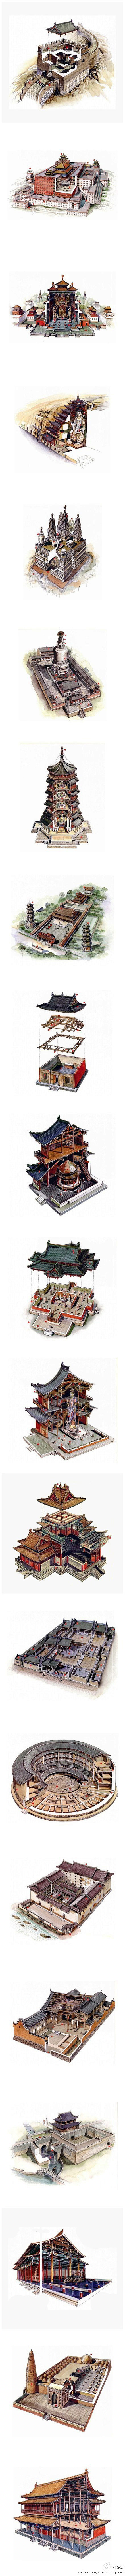 【超强手绘】穿墙透壁——中国经典建筑剖视...